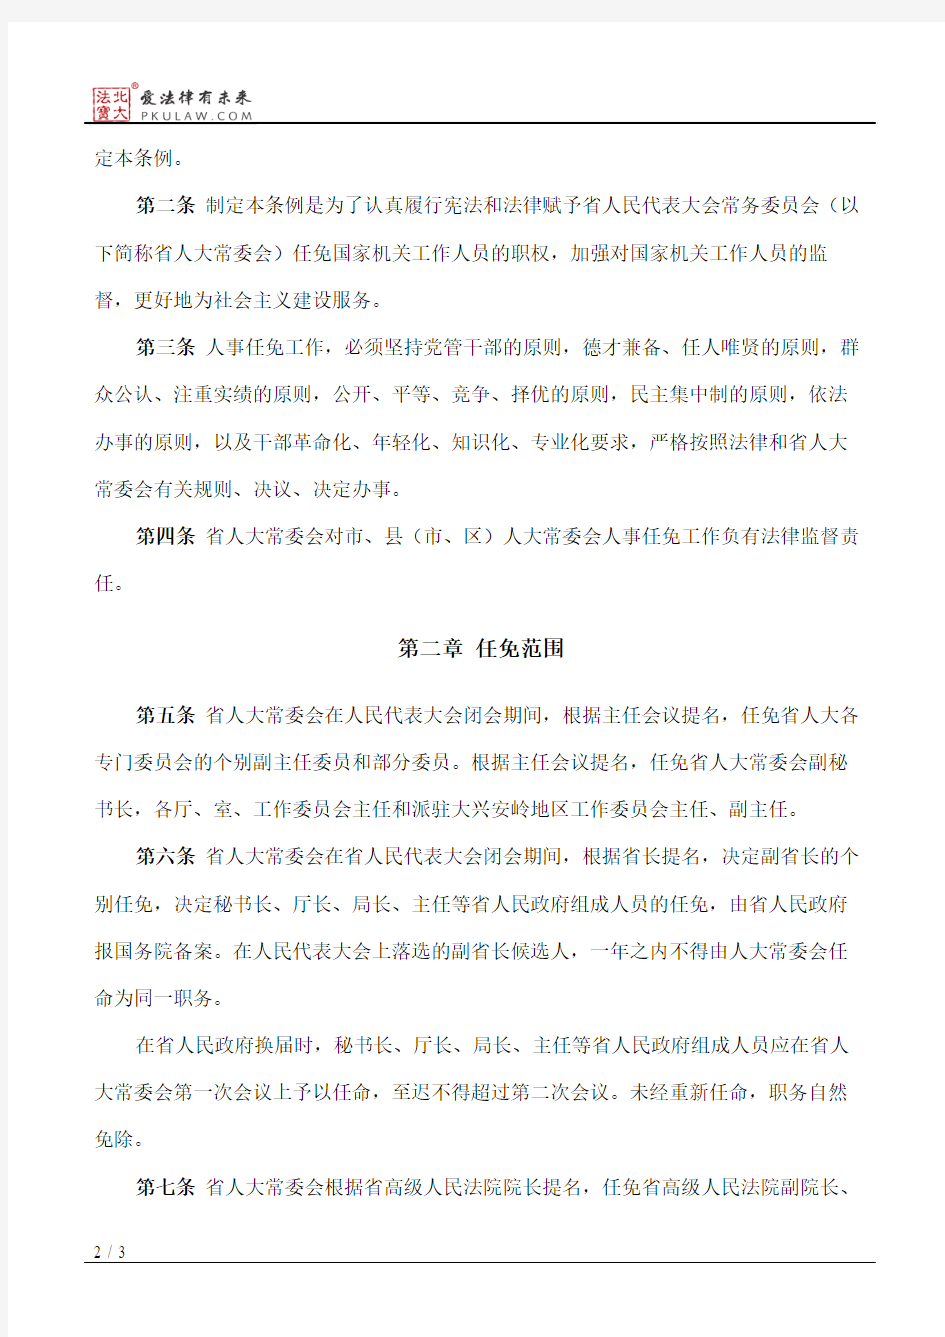 黑龙江省人民代表大会常务委员会人事任免条例(2016修正)